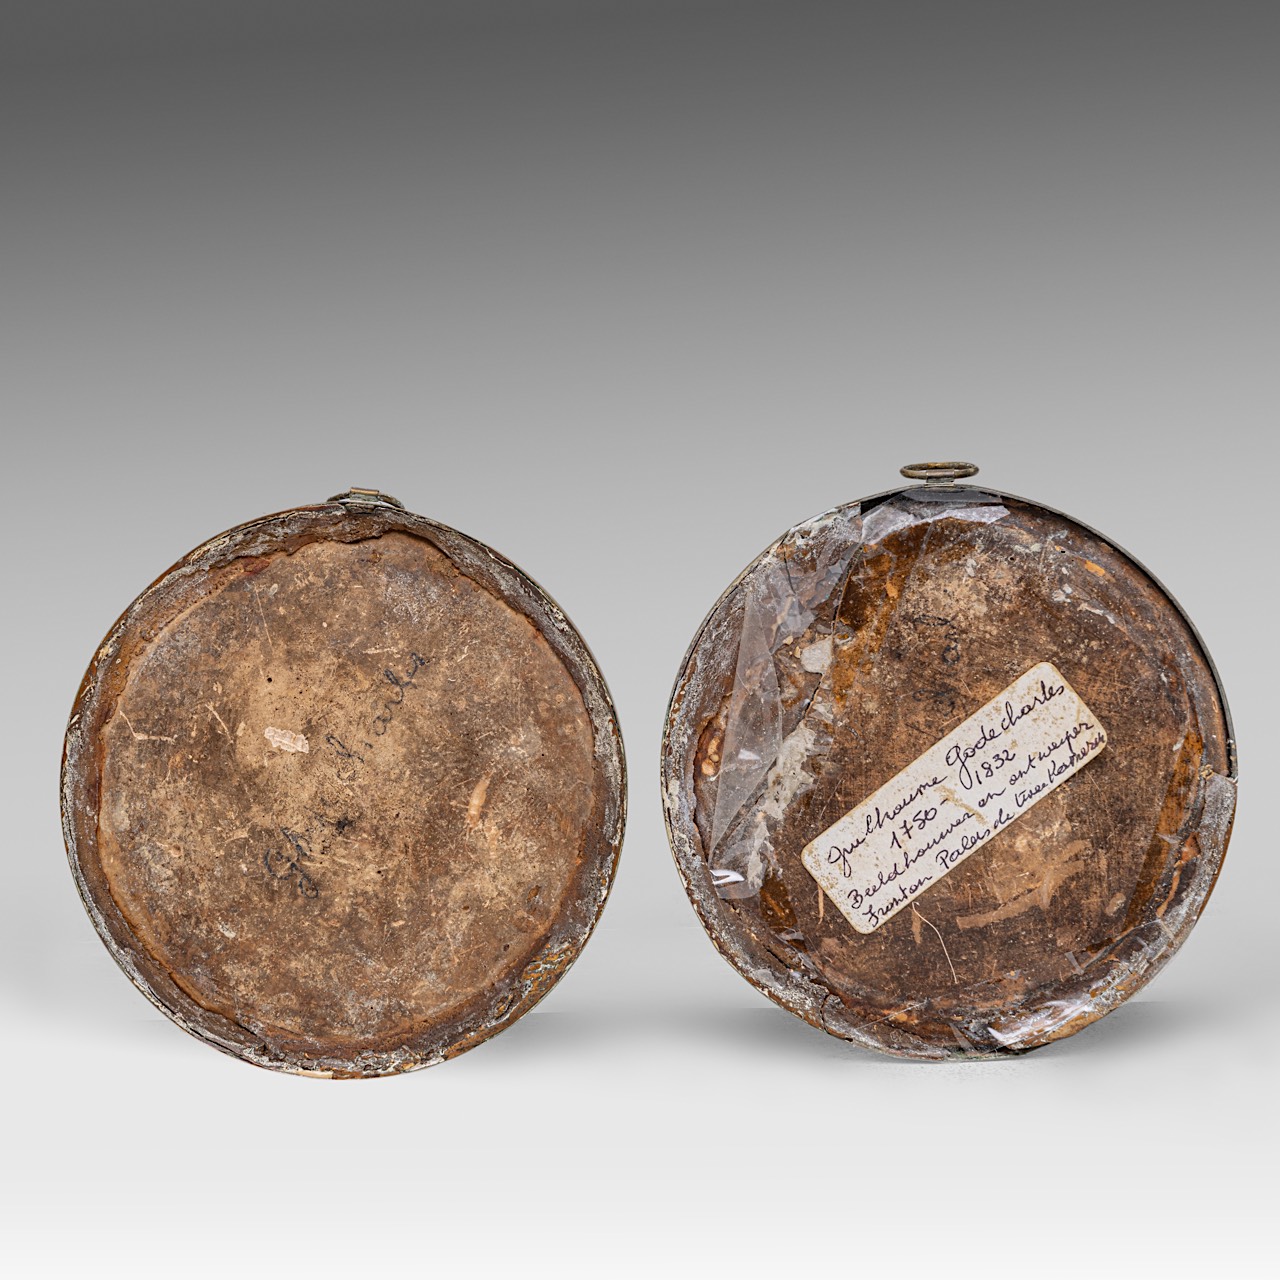 Attrib. to Gilles Lambert Godecharle (1750-1835), a pair of terracotta tondos, dia 13 cm - Image 2 of 4